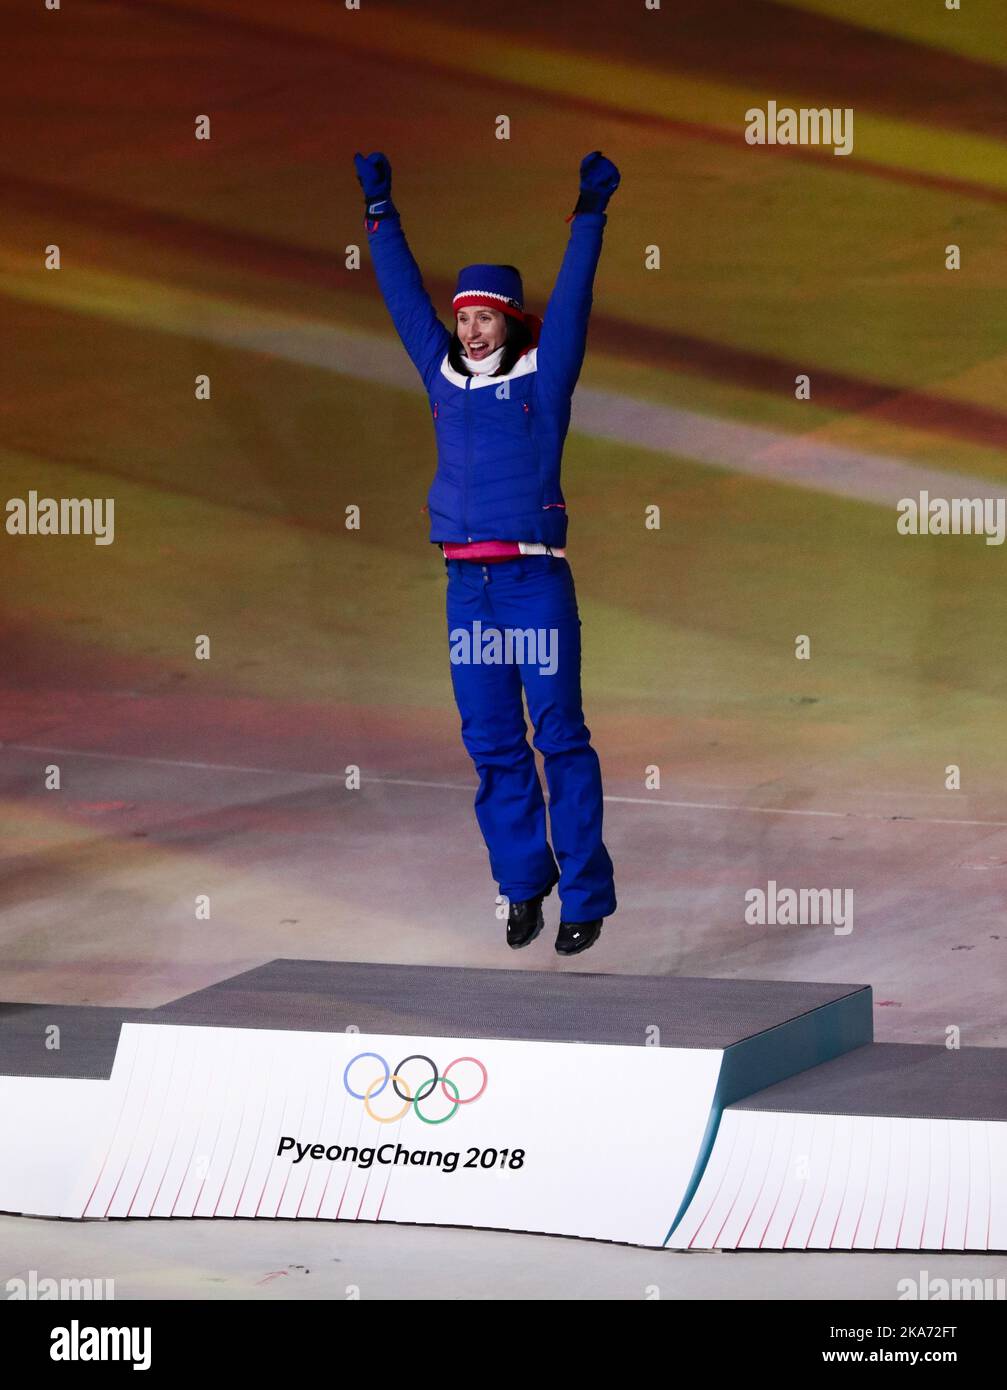 Marit Bjoergen, Gold, de Norvège, lors de la cérémonie des médailles pour le ski de fond féminin de 30k lors de la cérémonie de clôture des Jeux olympiques d'hiver de 2018 à Pyeongchang, Corée du Sud, le dimanche 25 février 2018. Photo: Lise Aaserud / NTB scanpi Banque D'Images